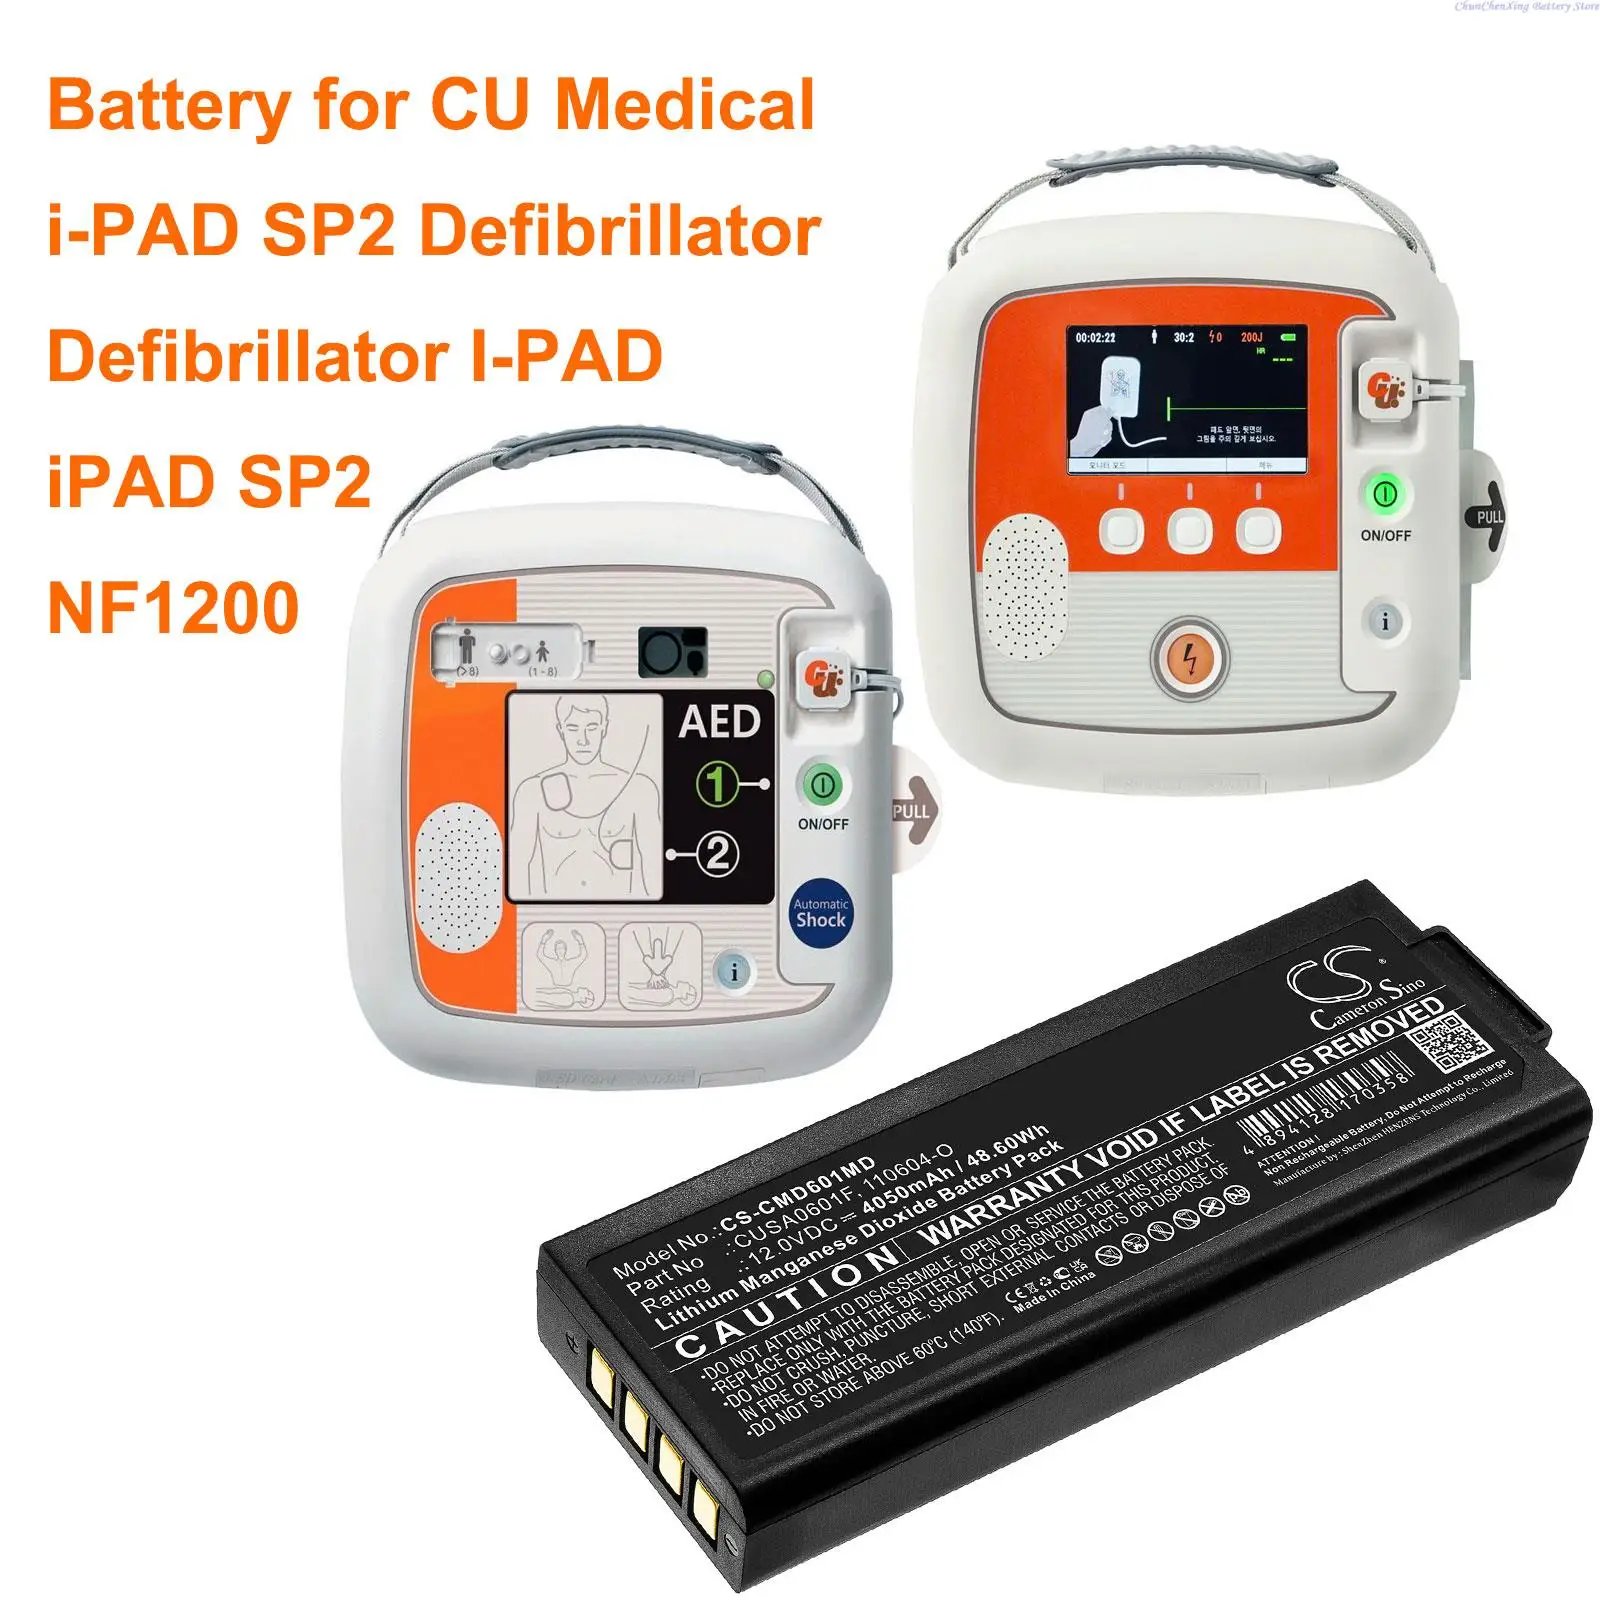 OrangeYu 4050mAh Tıbbi Pil CUSA0601F CU Tıbbi Defibrilatör İ-PAD, iPad SP1, iPad SP2, NF1200, i-PAD SP1, i-PAD SP2